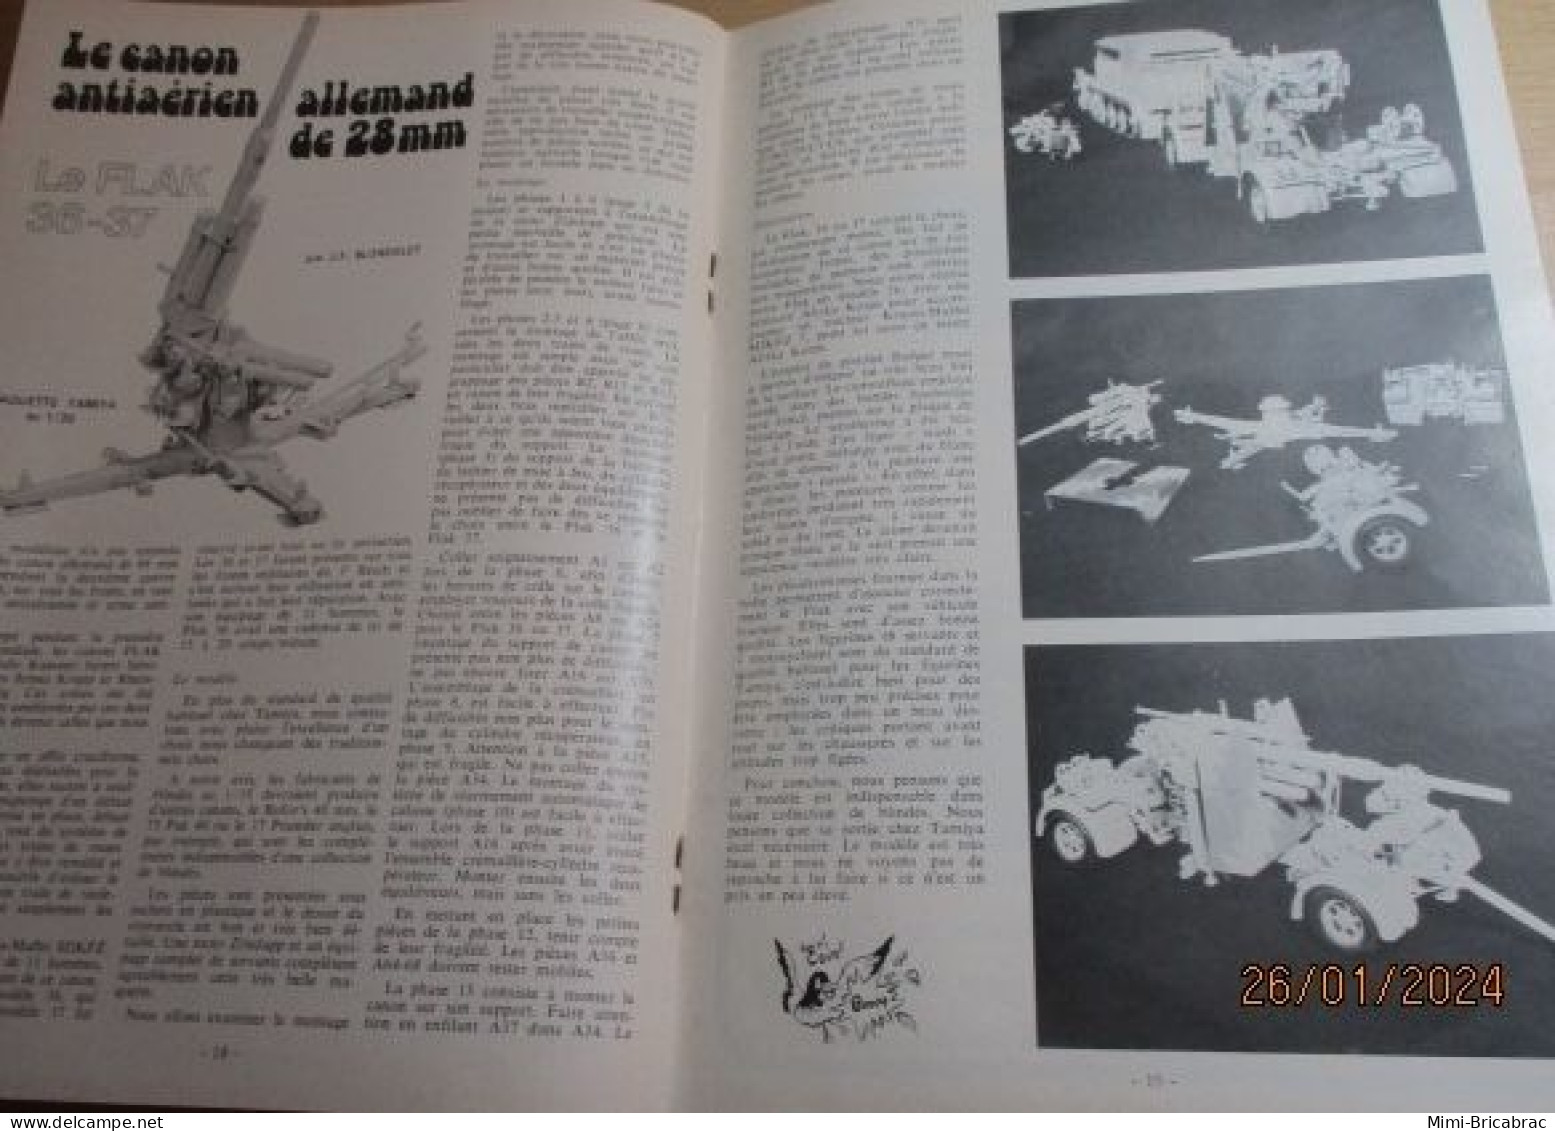 CAGI 1e Revue de maquettisme plastique années 60/70 : MPM n°39 de 1974 très bon état ! Sommaire en photo 2 ou 3